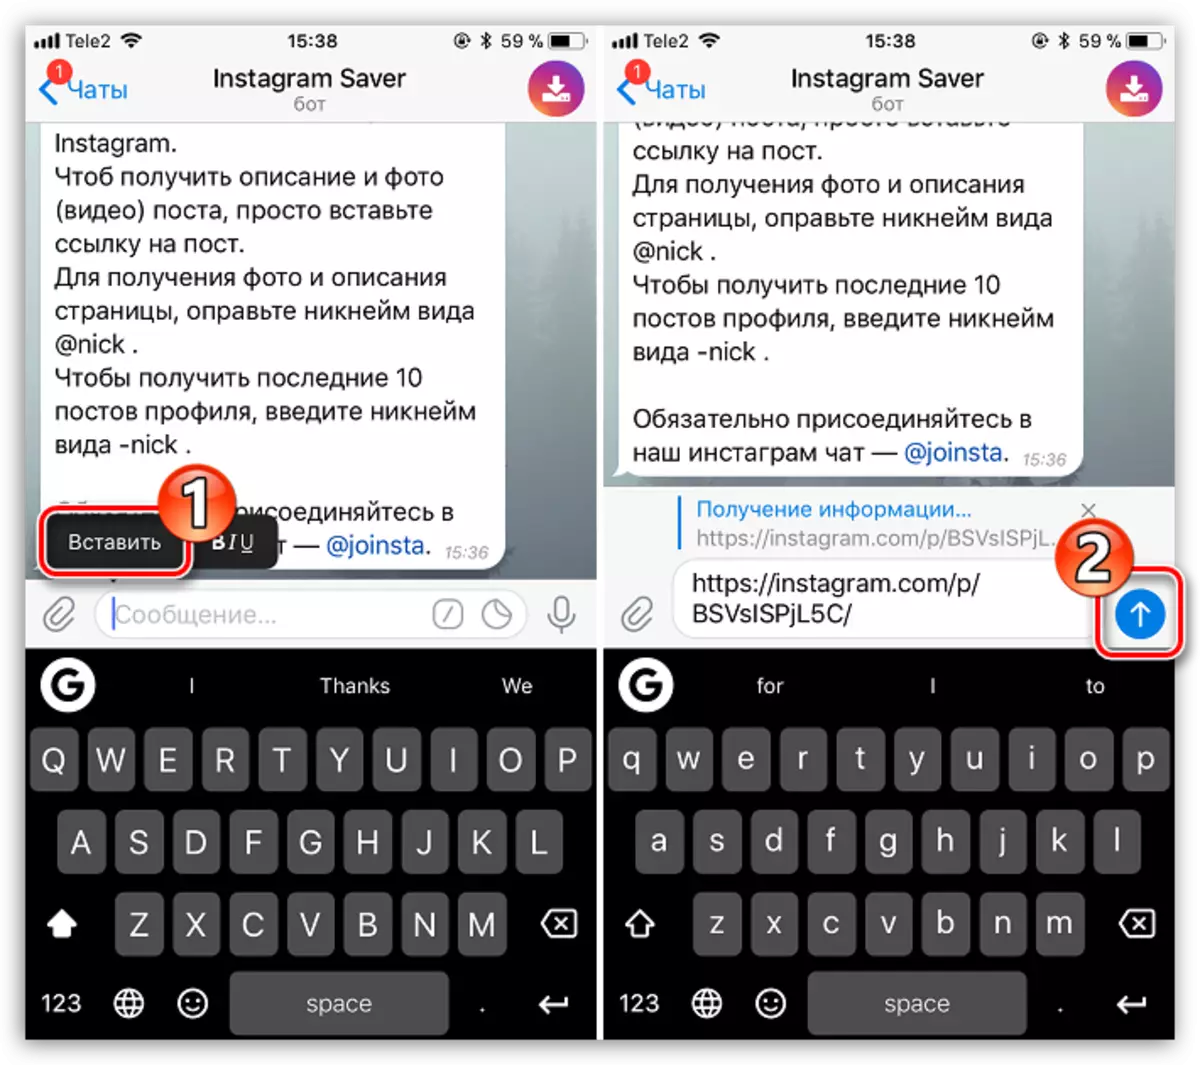 Stuur skakels na Instagram-publikasie in telegram